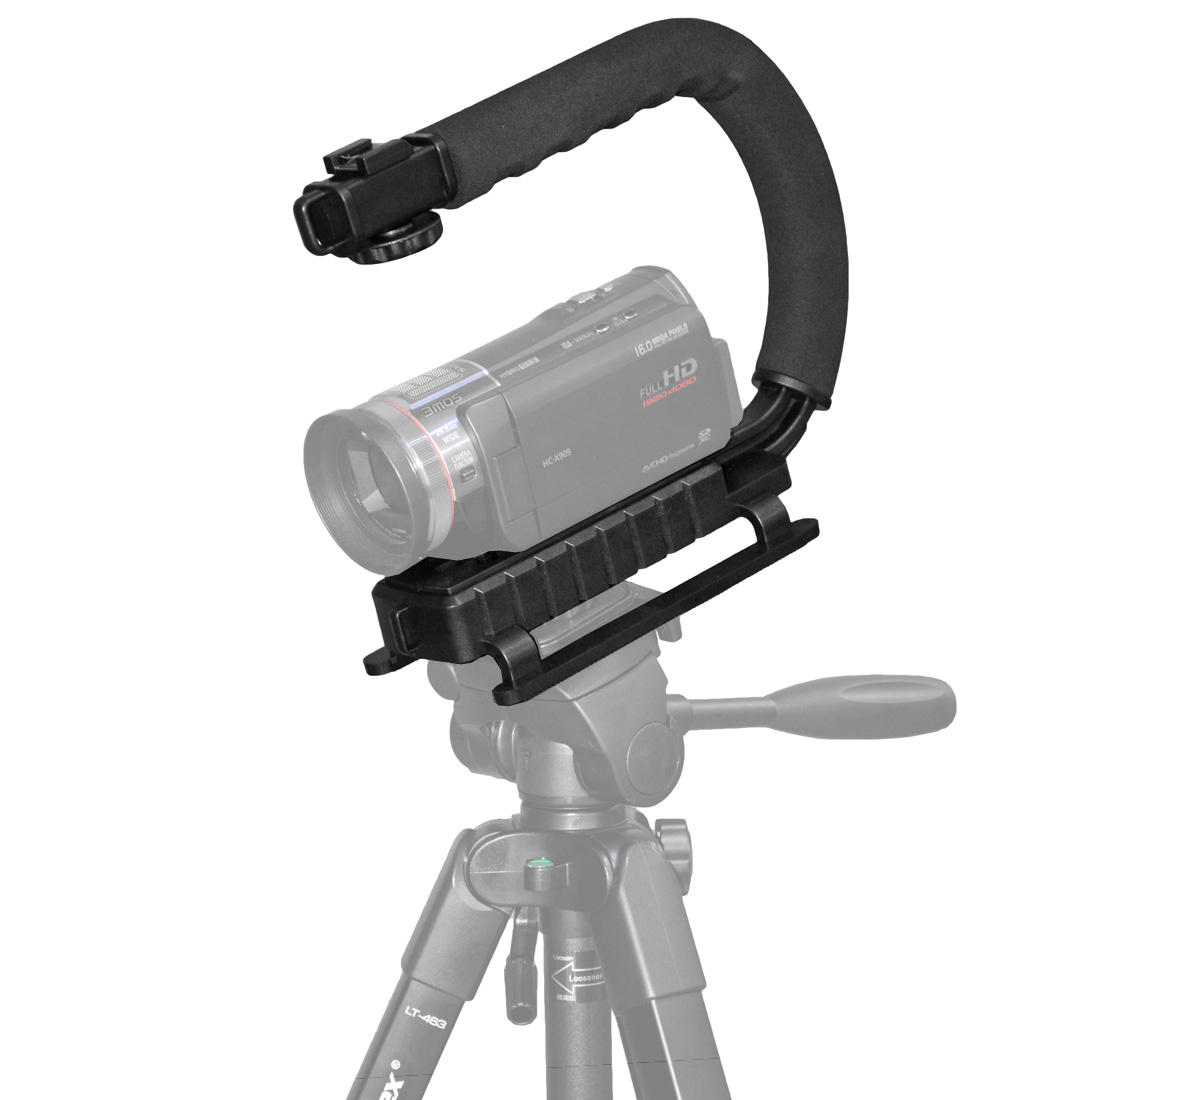 ayex Action Grip Video Stabilizer für DSLR und Camcorder, Schwebestativ für ruhige Videoaufnahmen